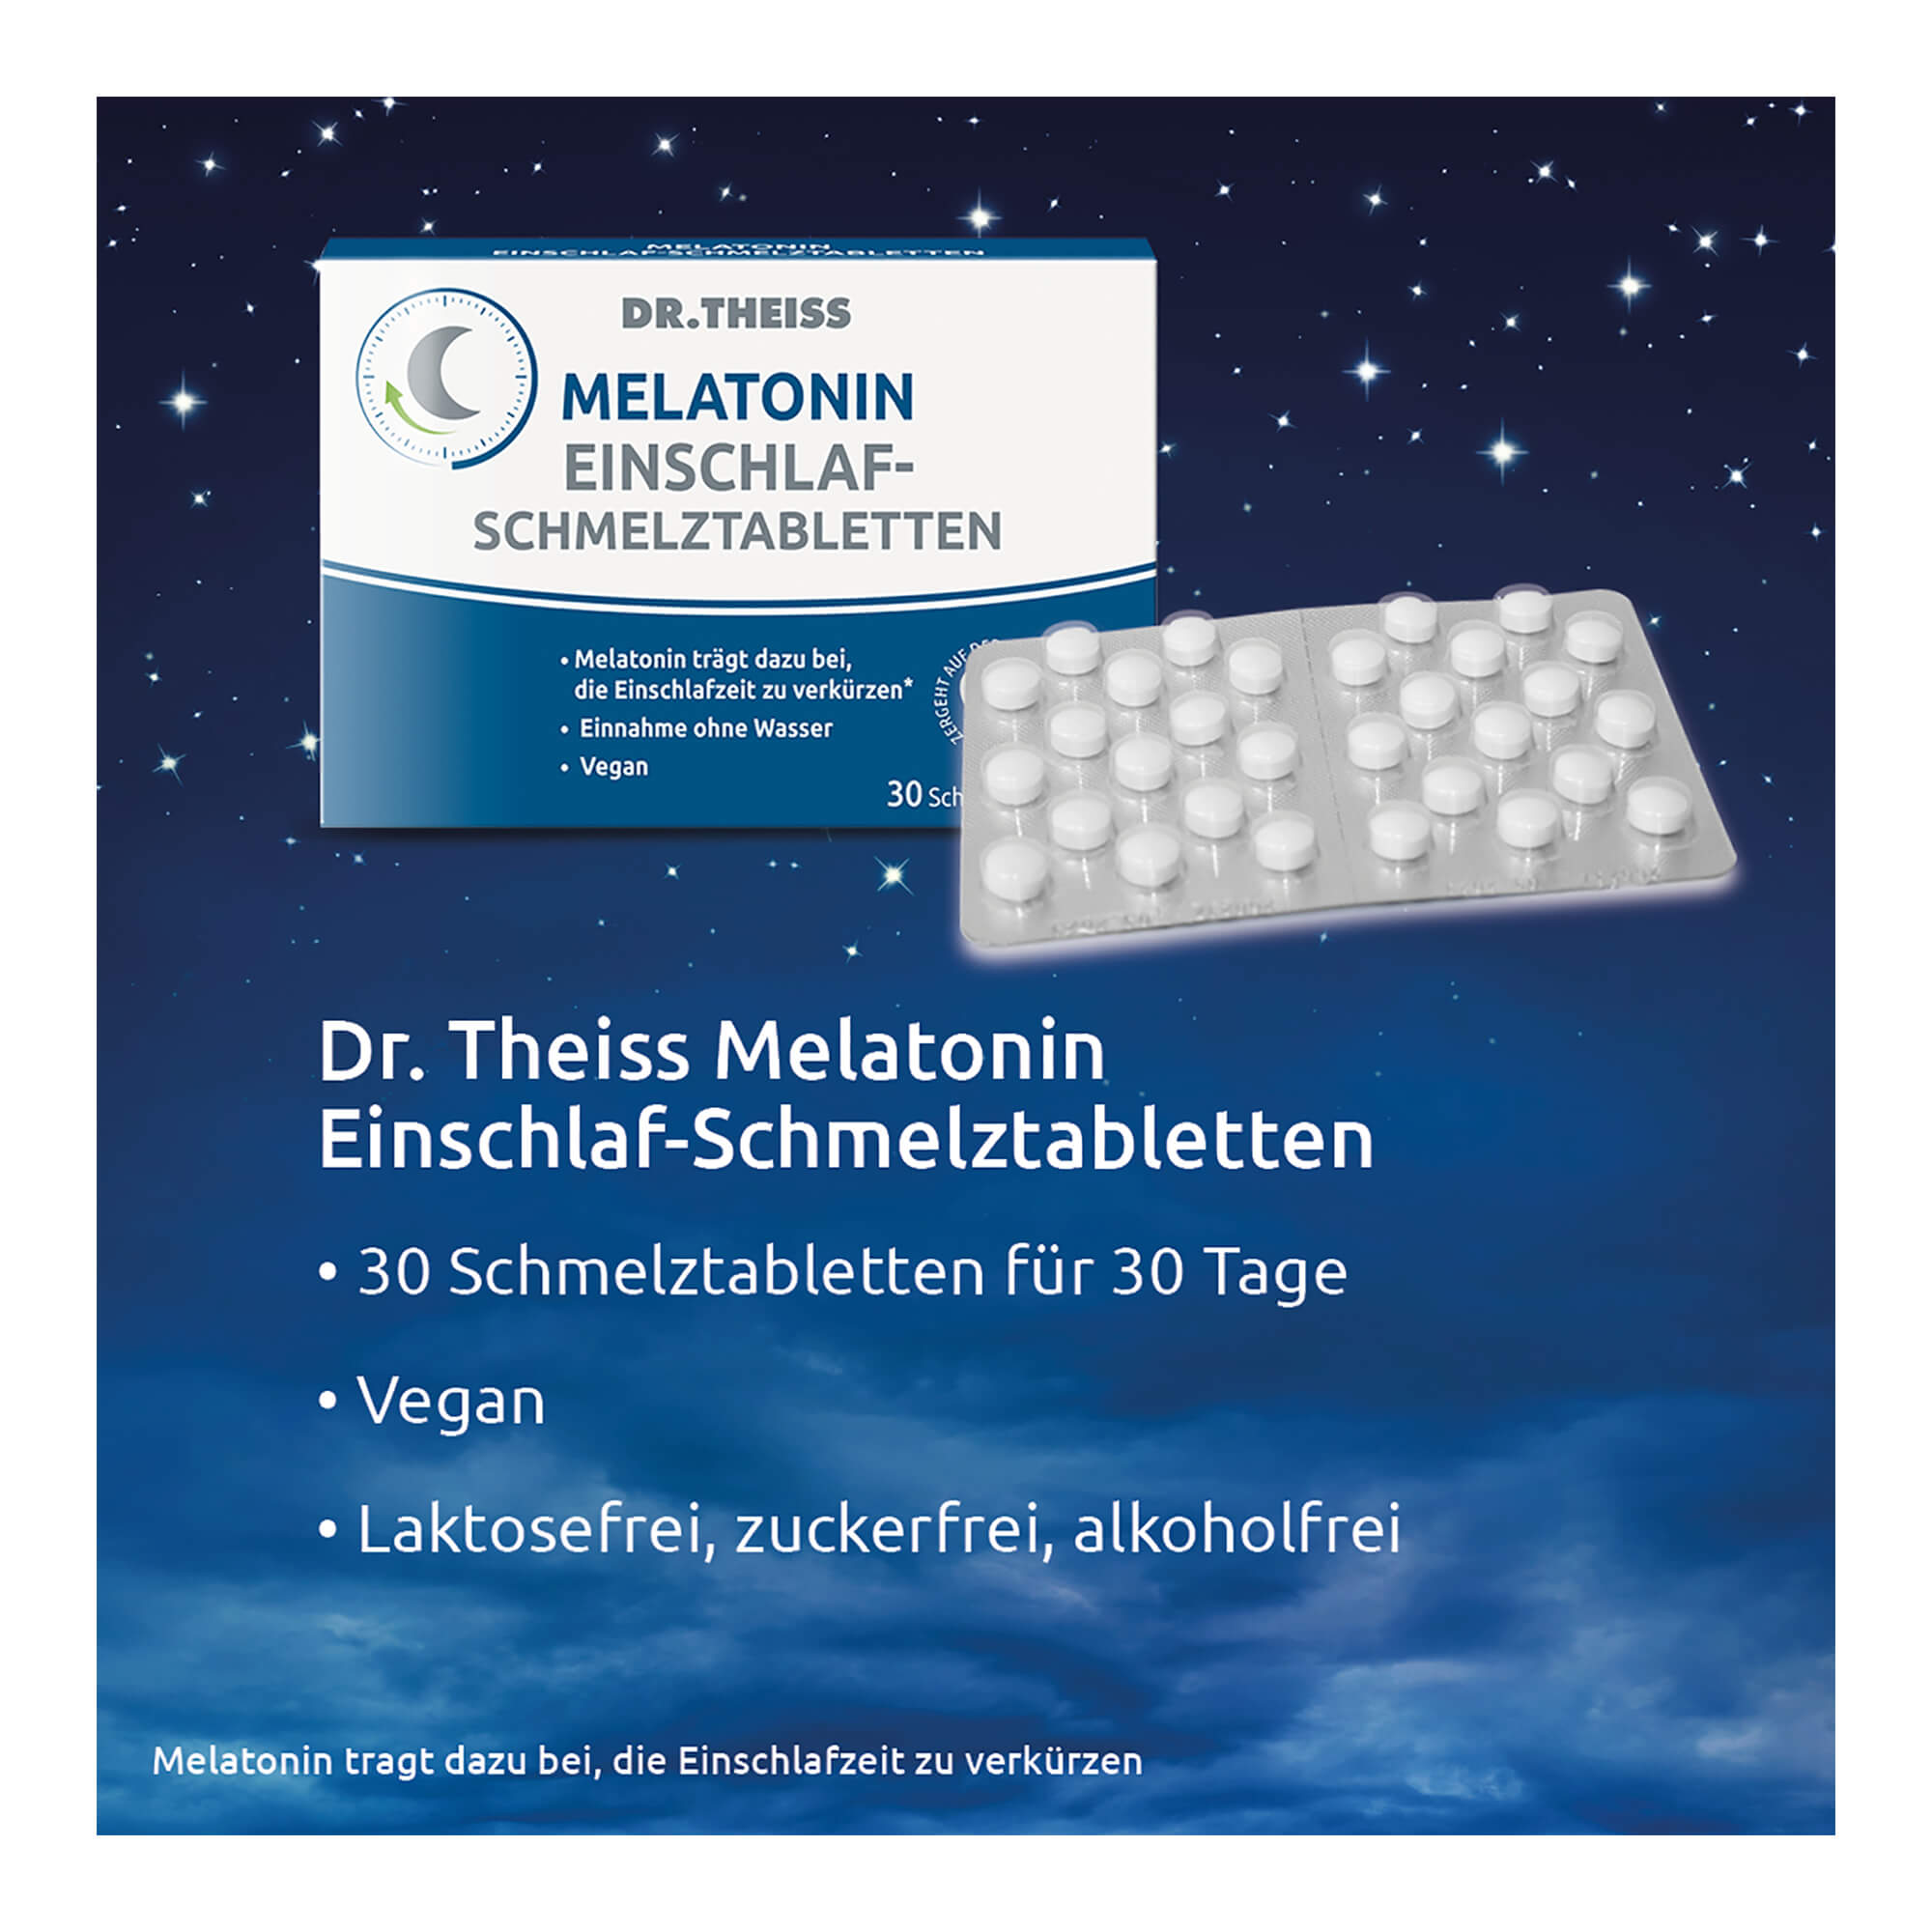 Grafik Dr. Theiss Melatonin Einschlaf-Schmelztabl. Merkmale